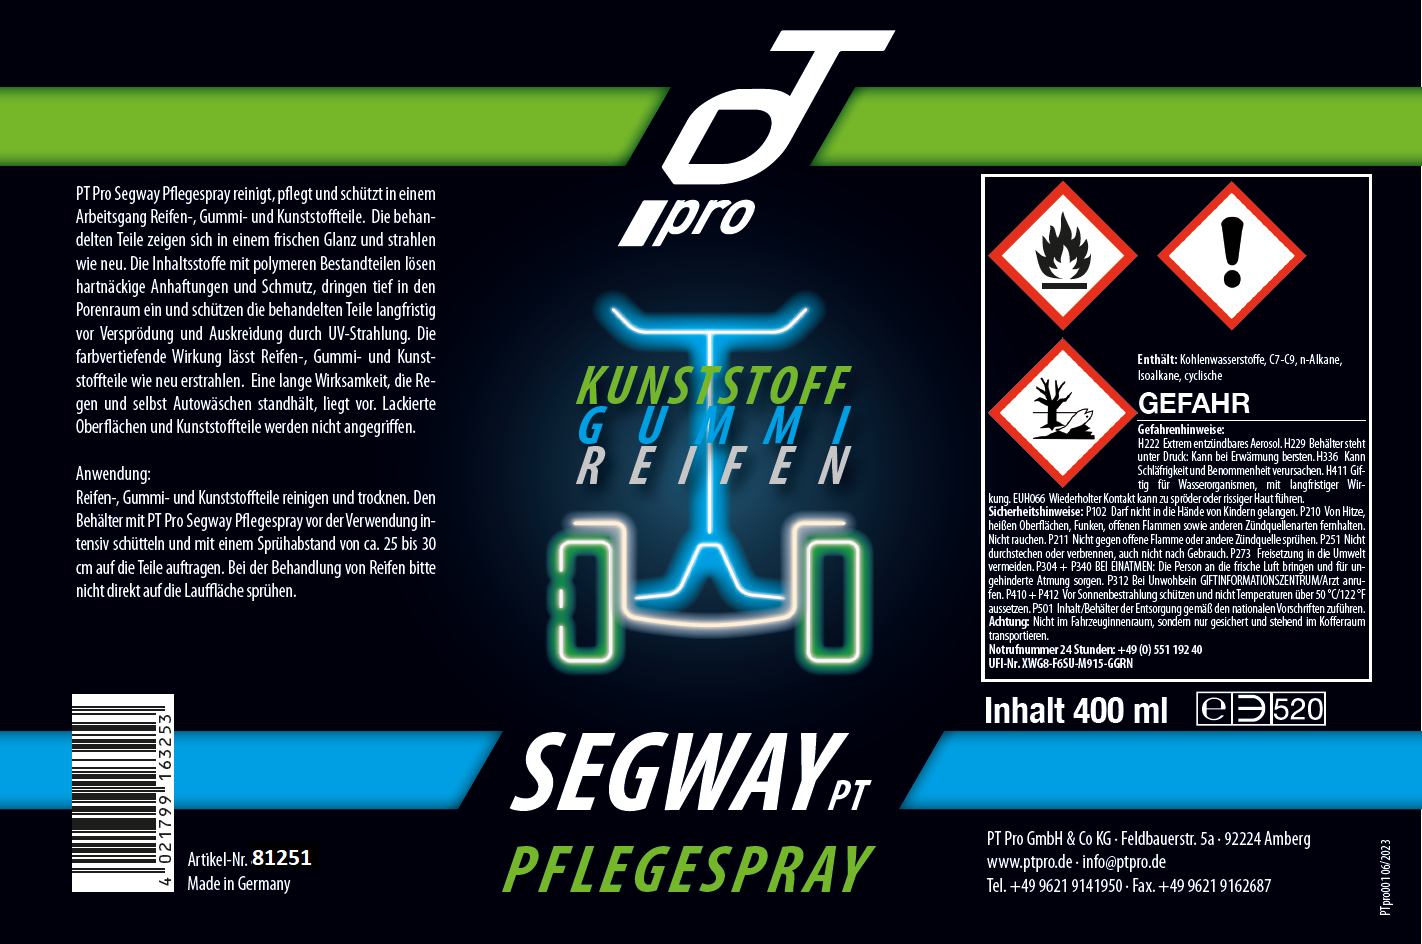 Segway PT - Kunstoff, Gummi, Reifen Reiniger